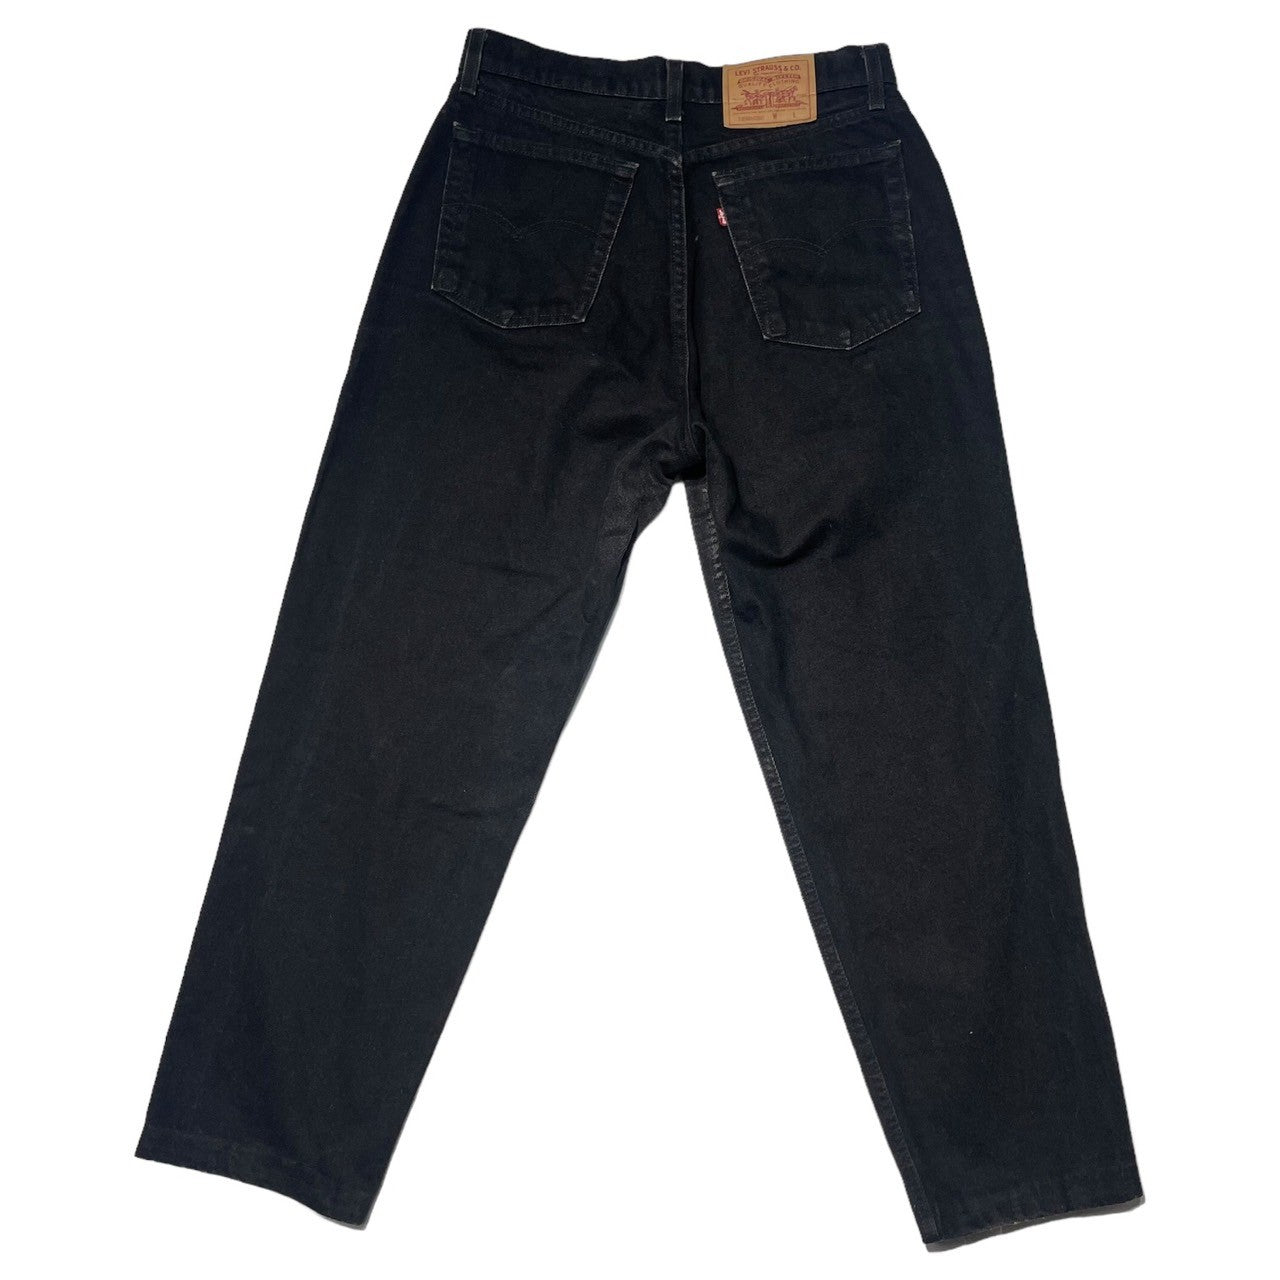 Levi's(リーバイス) 90's 560 black denim pants ブラック デニム パンツ 13560-0260 W31(実寸) ブラック 推定90年代 ヴィンテージ 後染め